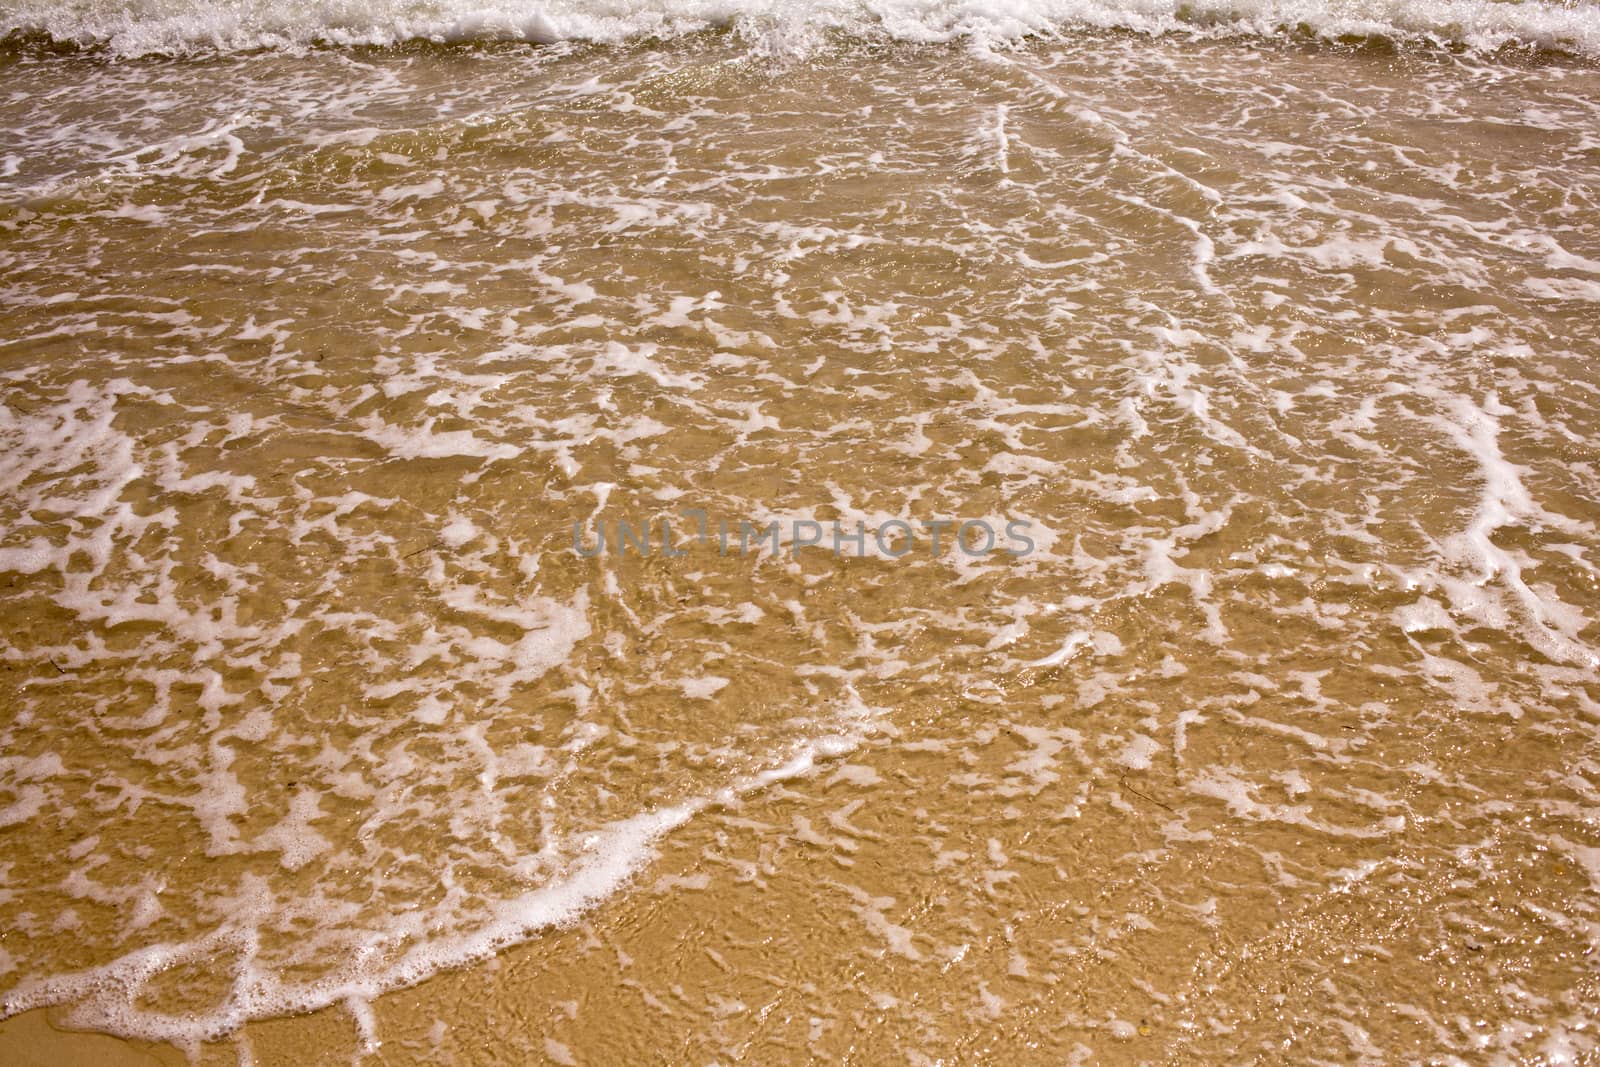 Foamed sea wave by Krakatuk